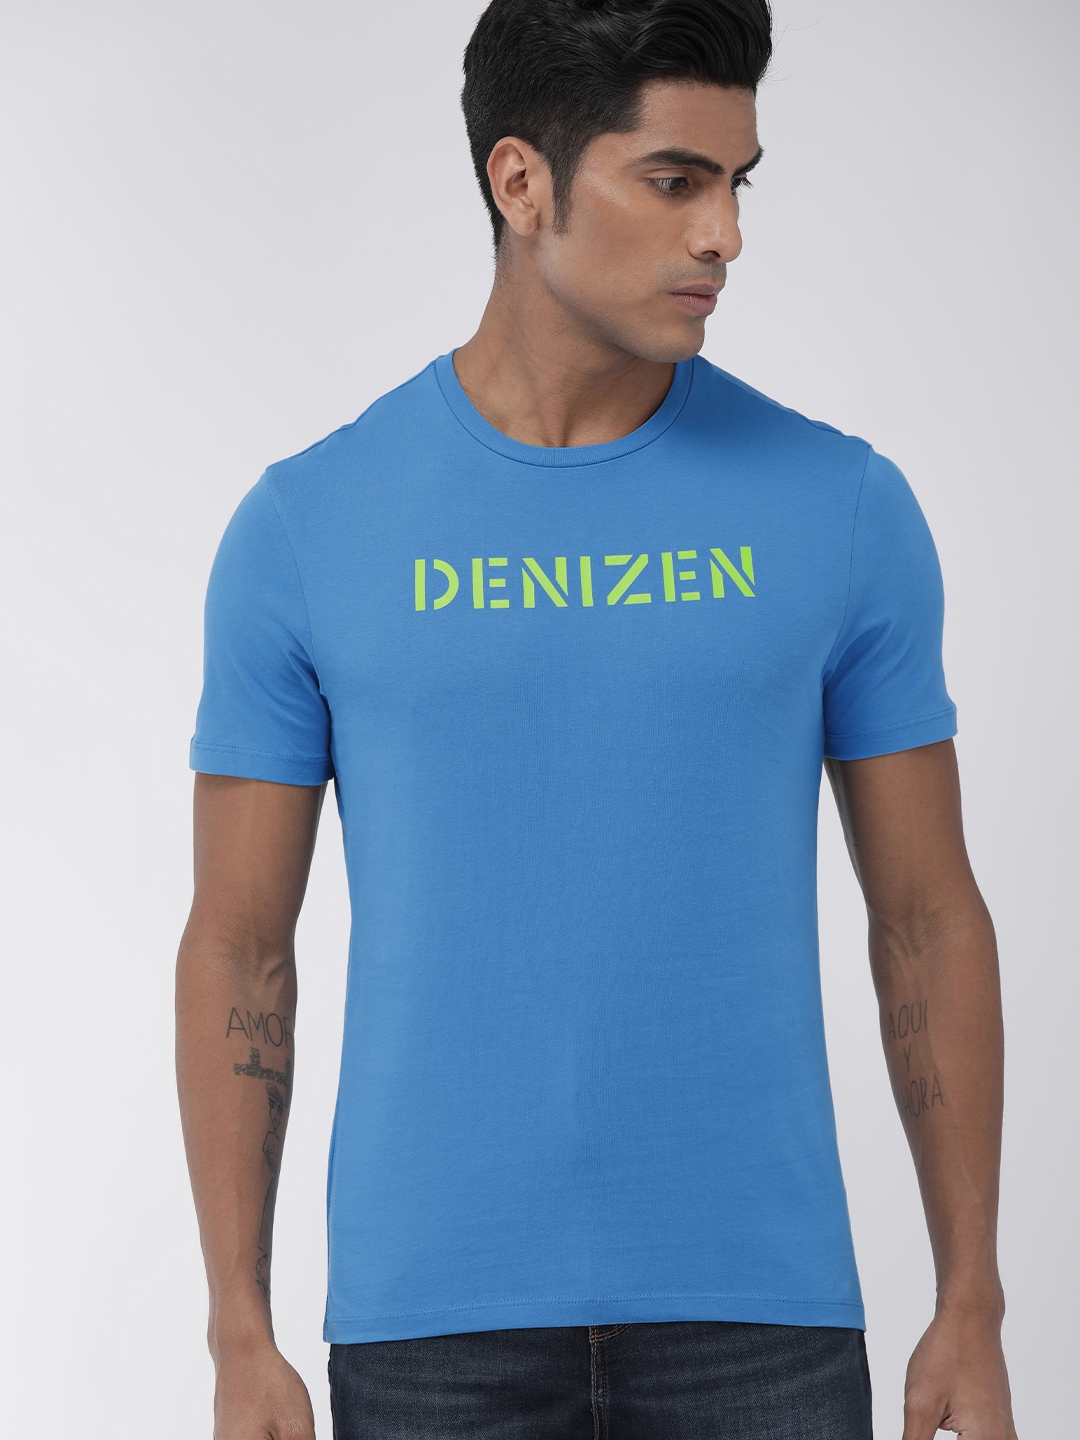 Buy Denizen From Levis Men Blue Printed Round Neck T Shirt - Tshirts ...